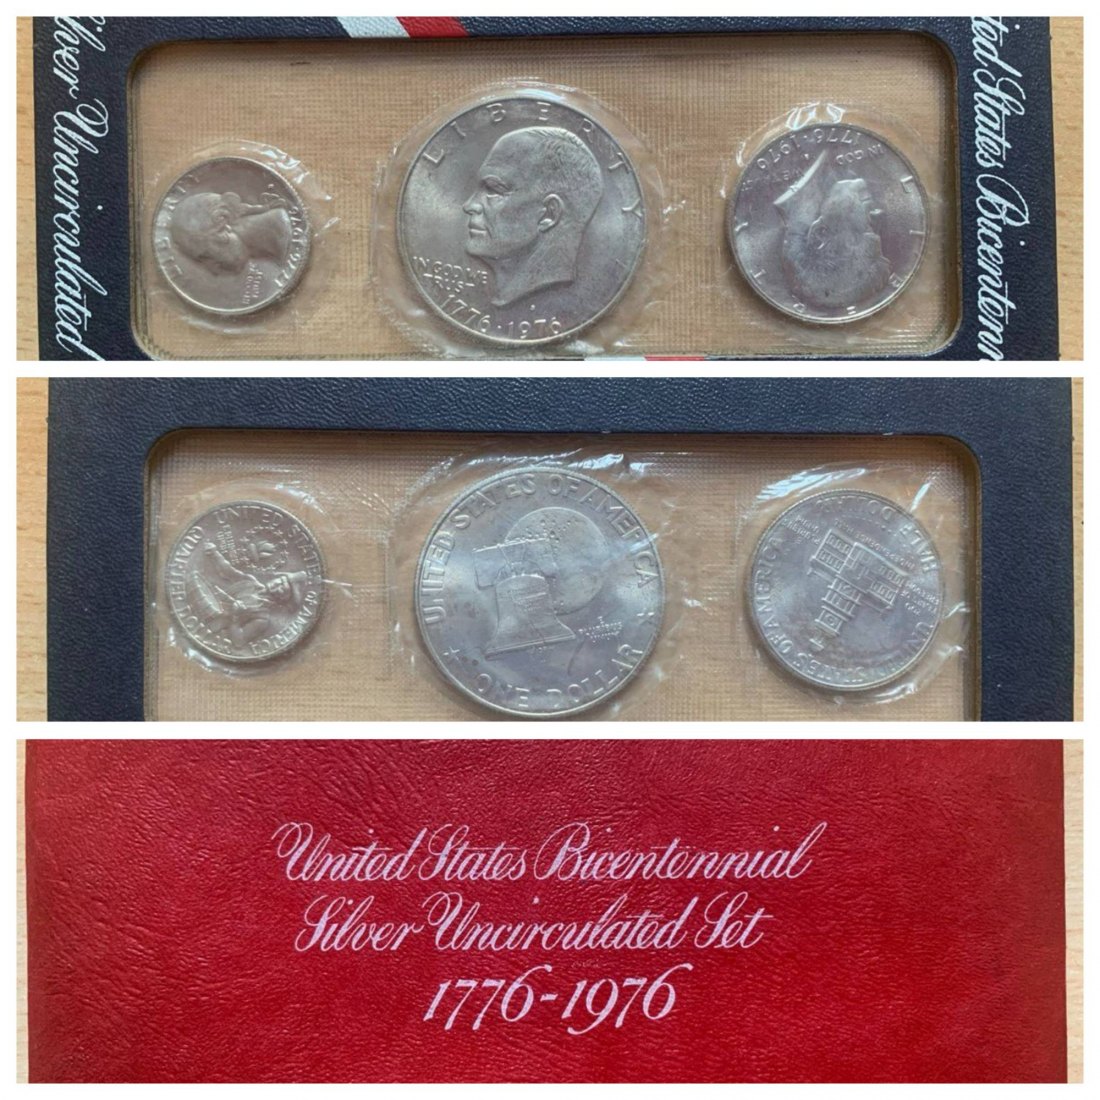  USA 1976 Bicentennial Silver Uncirculated Set 1776-1976 (3 coins)   